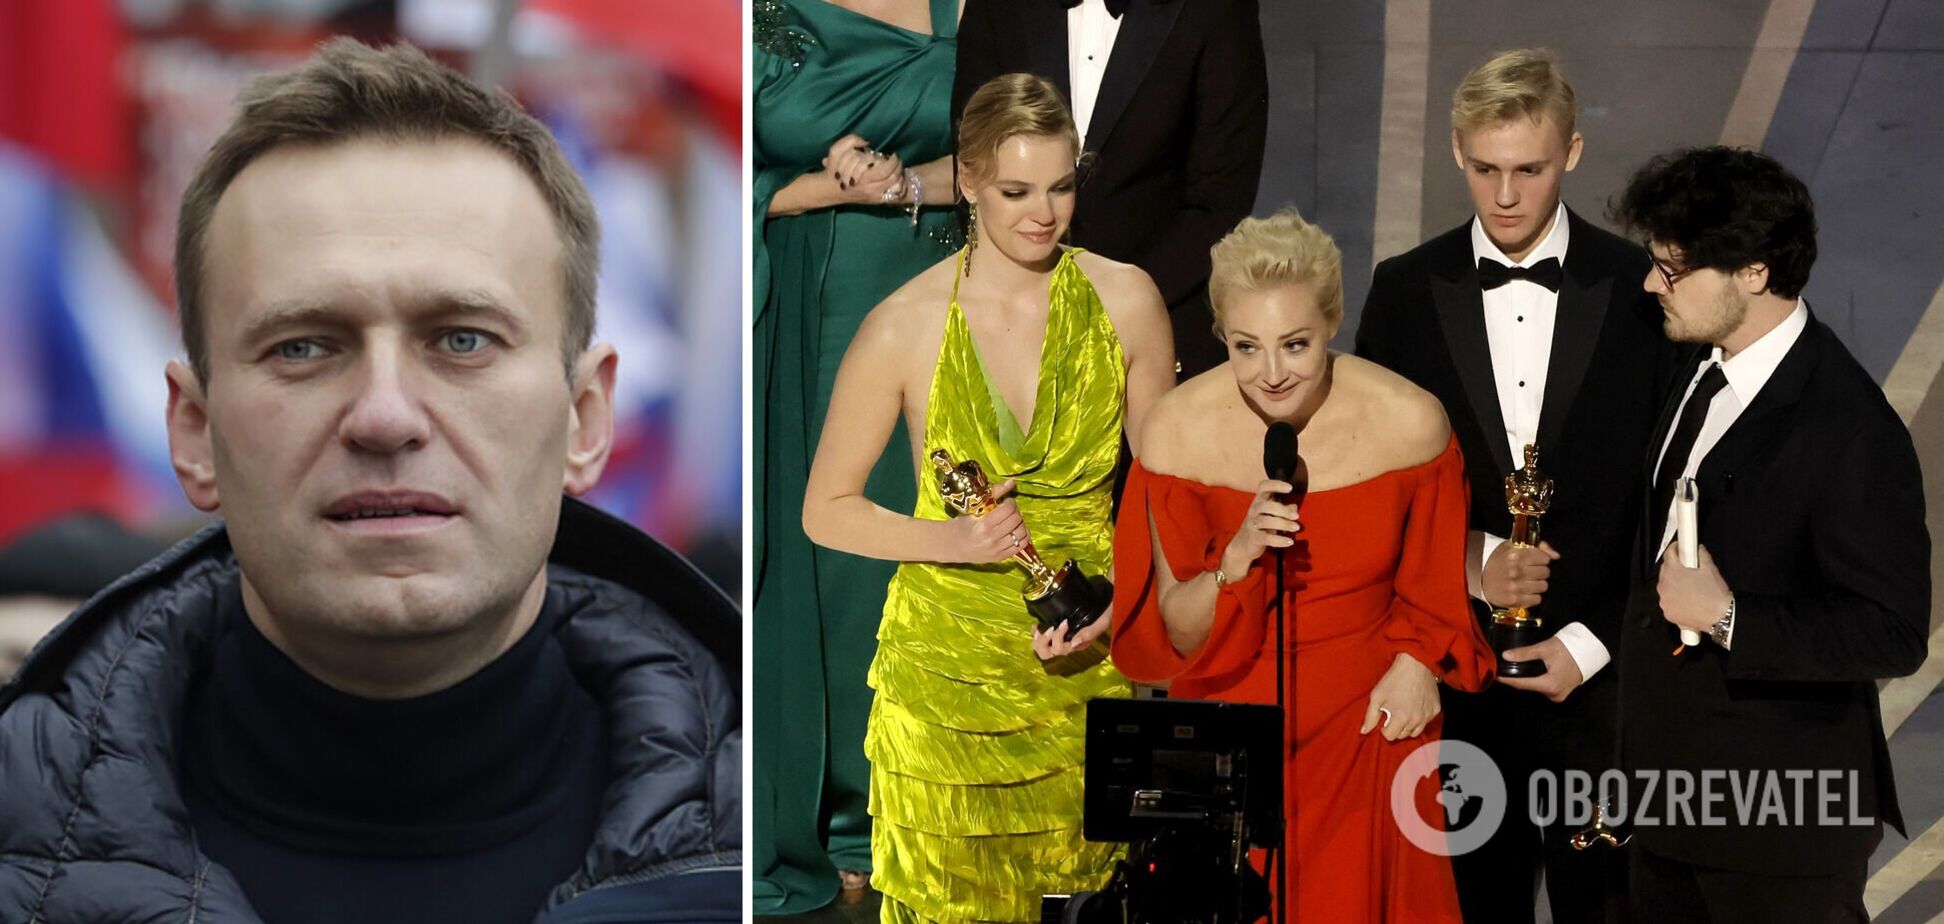 Фільм про Навального отримав 'Оскар': дружина росіянина вийшла по нагороду та заговорила про 'боротьбу за демократію'